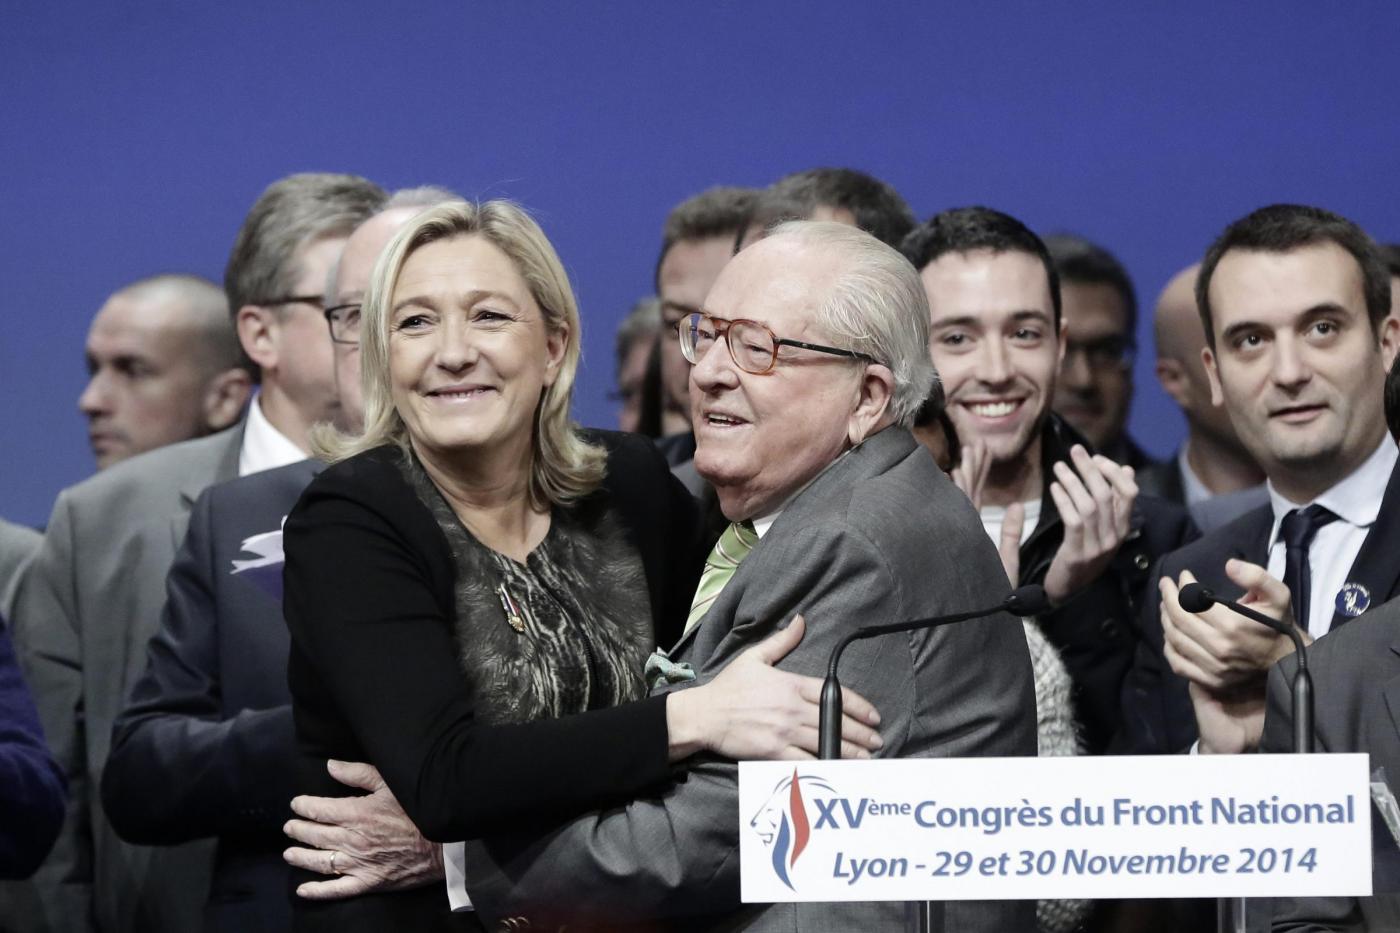 Jean Marie Le Pen ripudia la figlia Marine.